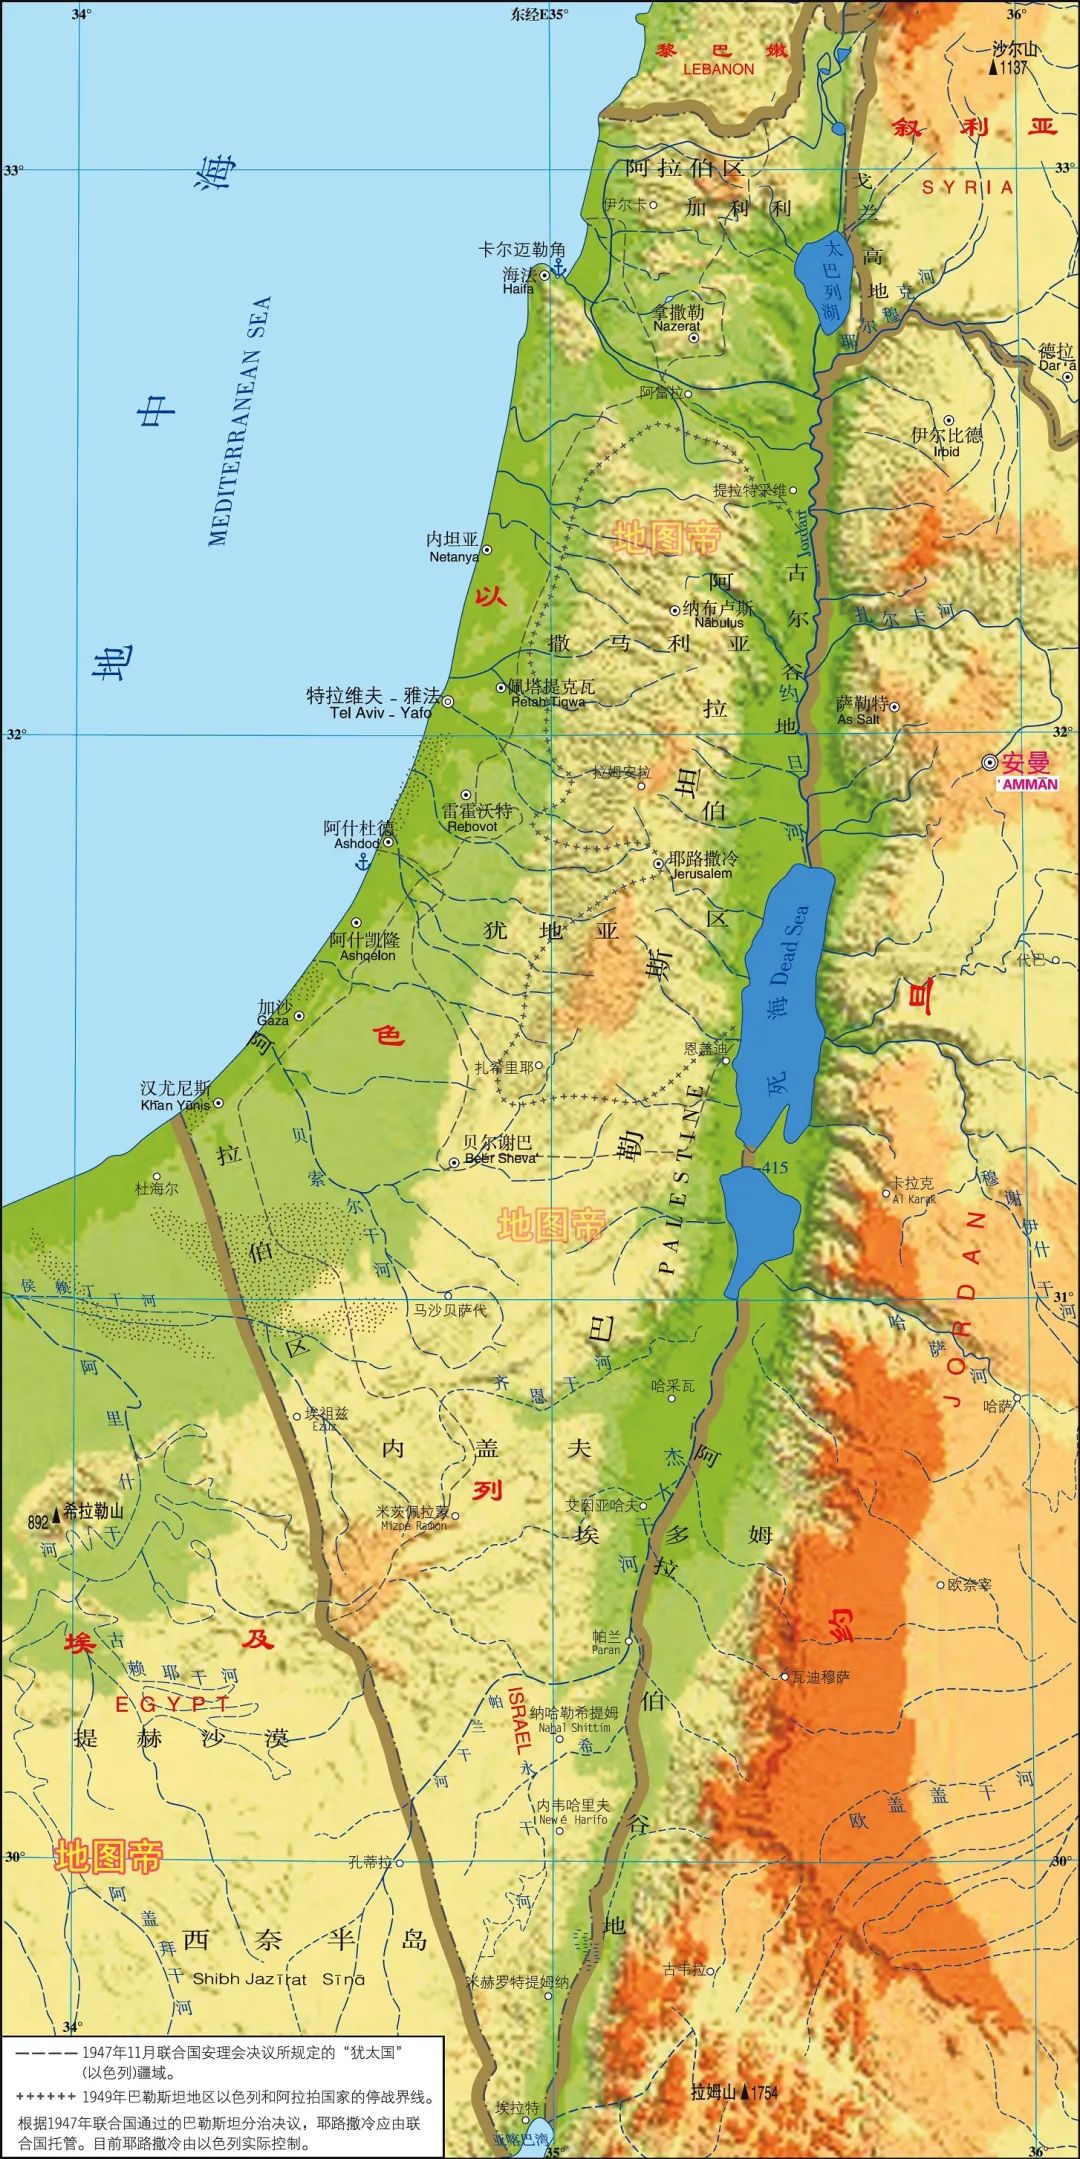 历史近期热点话题轰炸巴勒斯坦的以色列领土多大